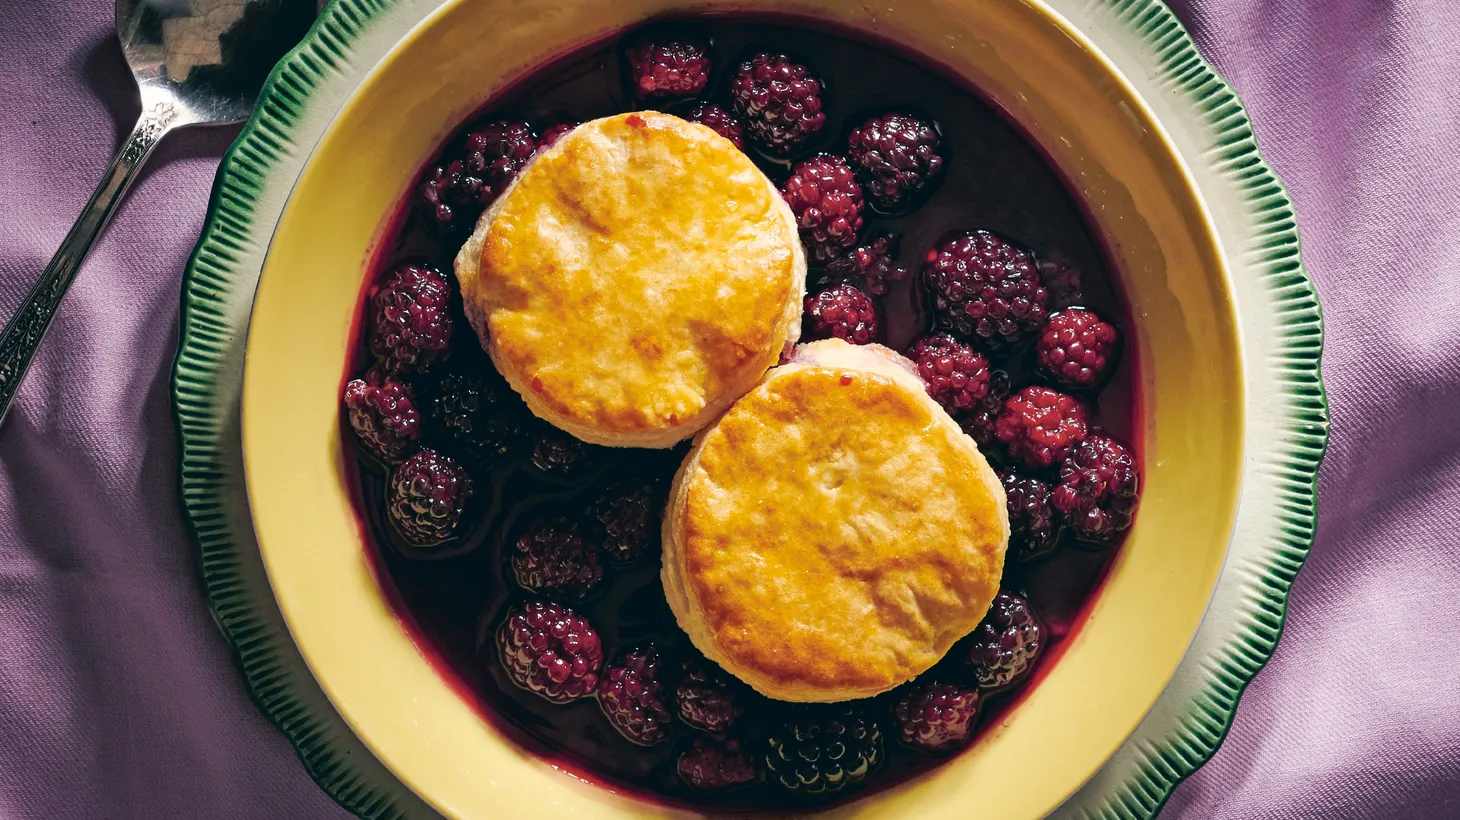 Boiled down blackberries and fresh biscuits evoke poet Crystal Wilkinson's childhood.